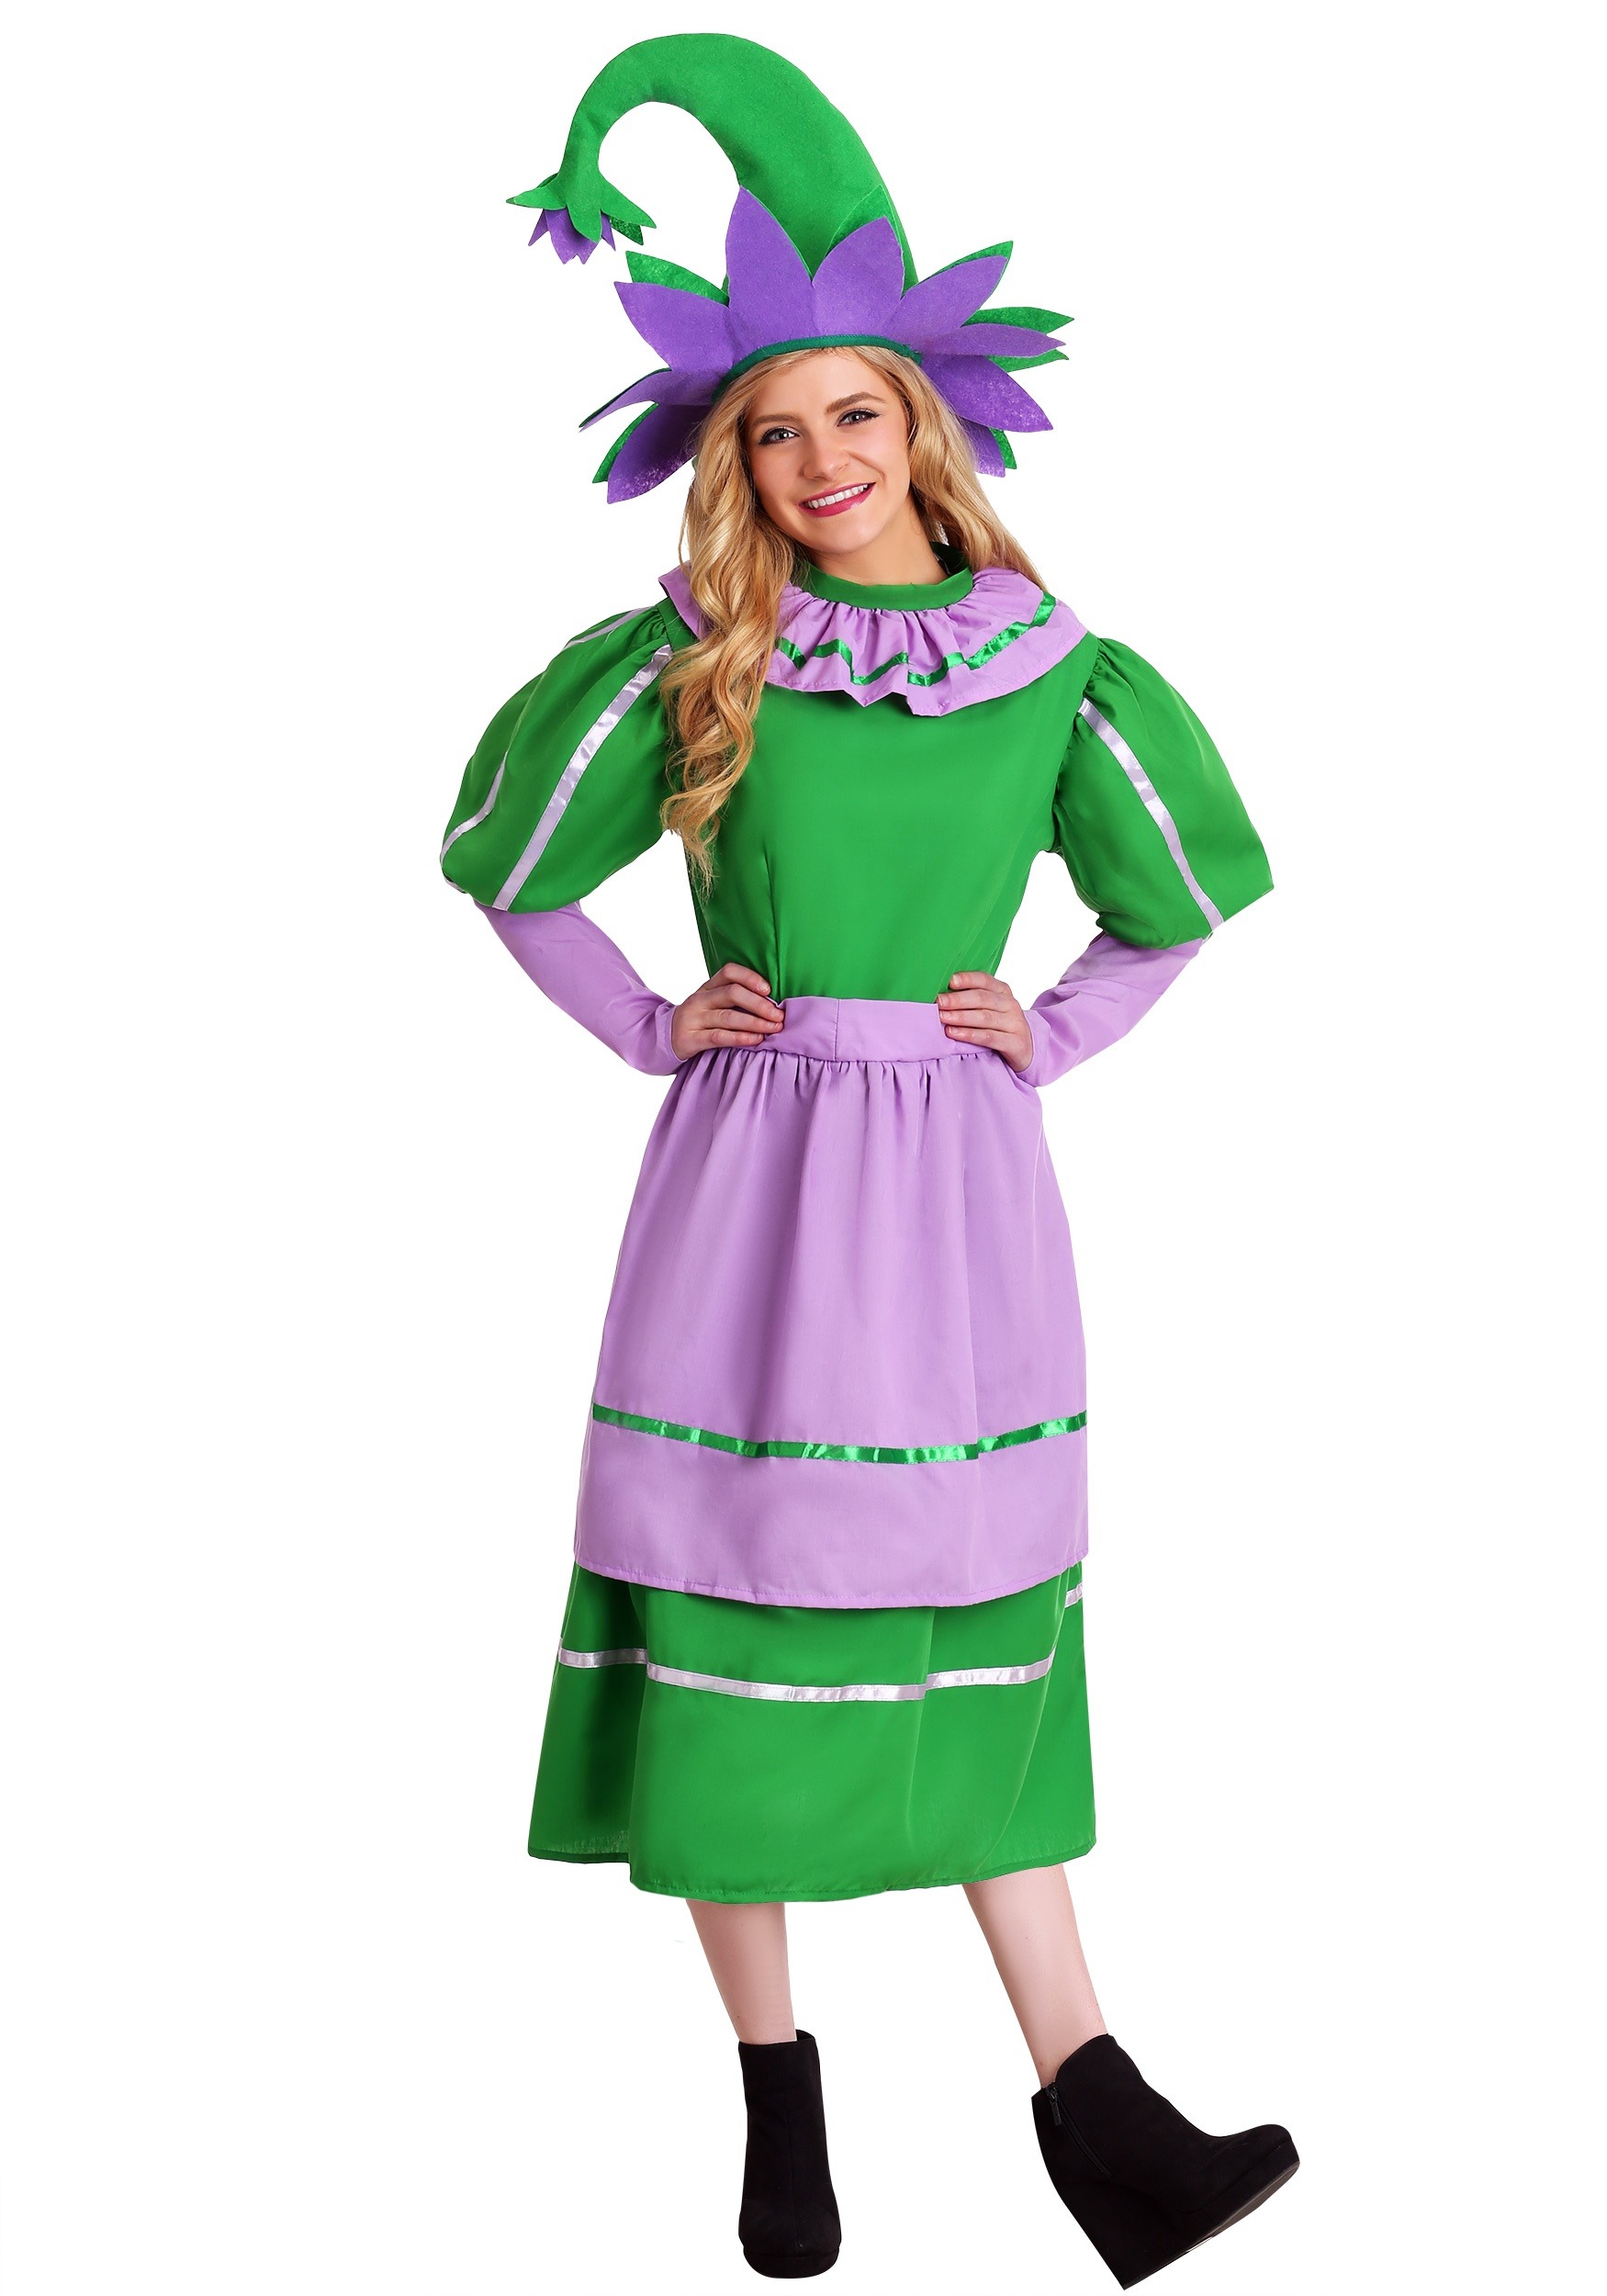 Photos - Fancy Dress Munchkin FUN Costumes Plus Size  Girl Women's Costume Green FUN2014PL 